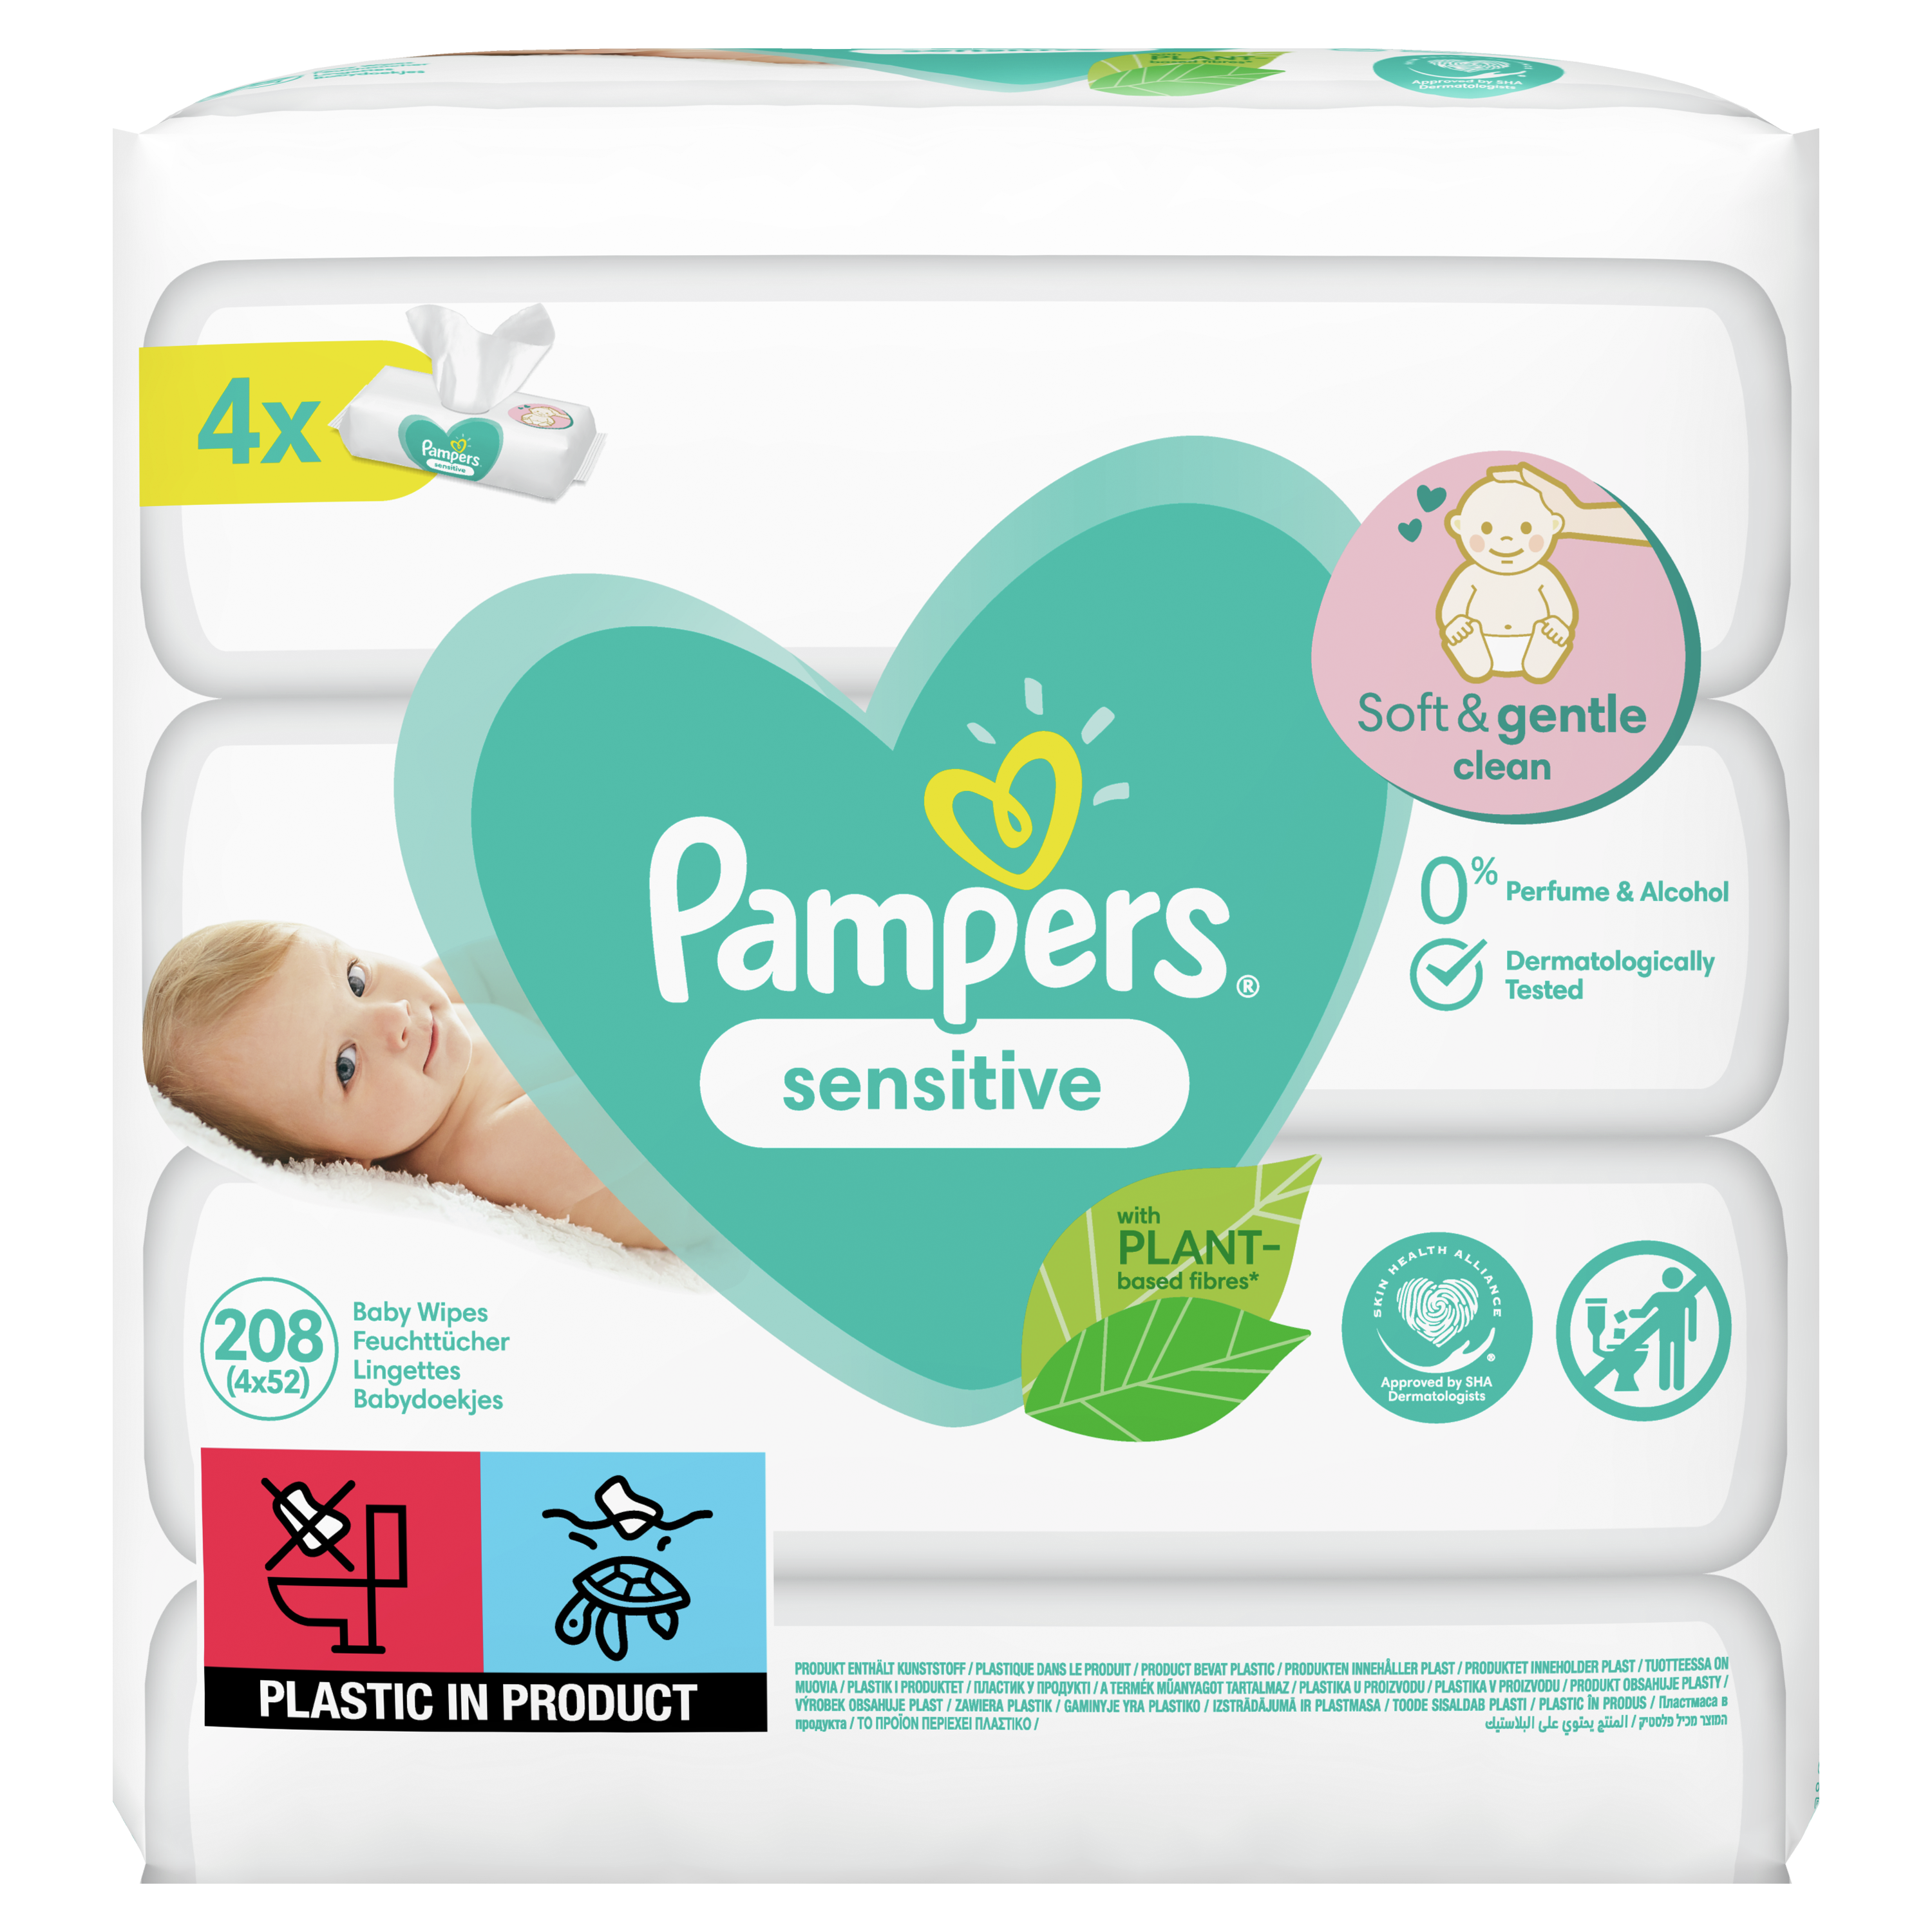 Детские влажные салфетки Pampers Sensitive 208 шт. детские влажные салфетки pampers fresh clean 208 шт